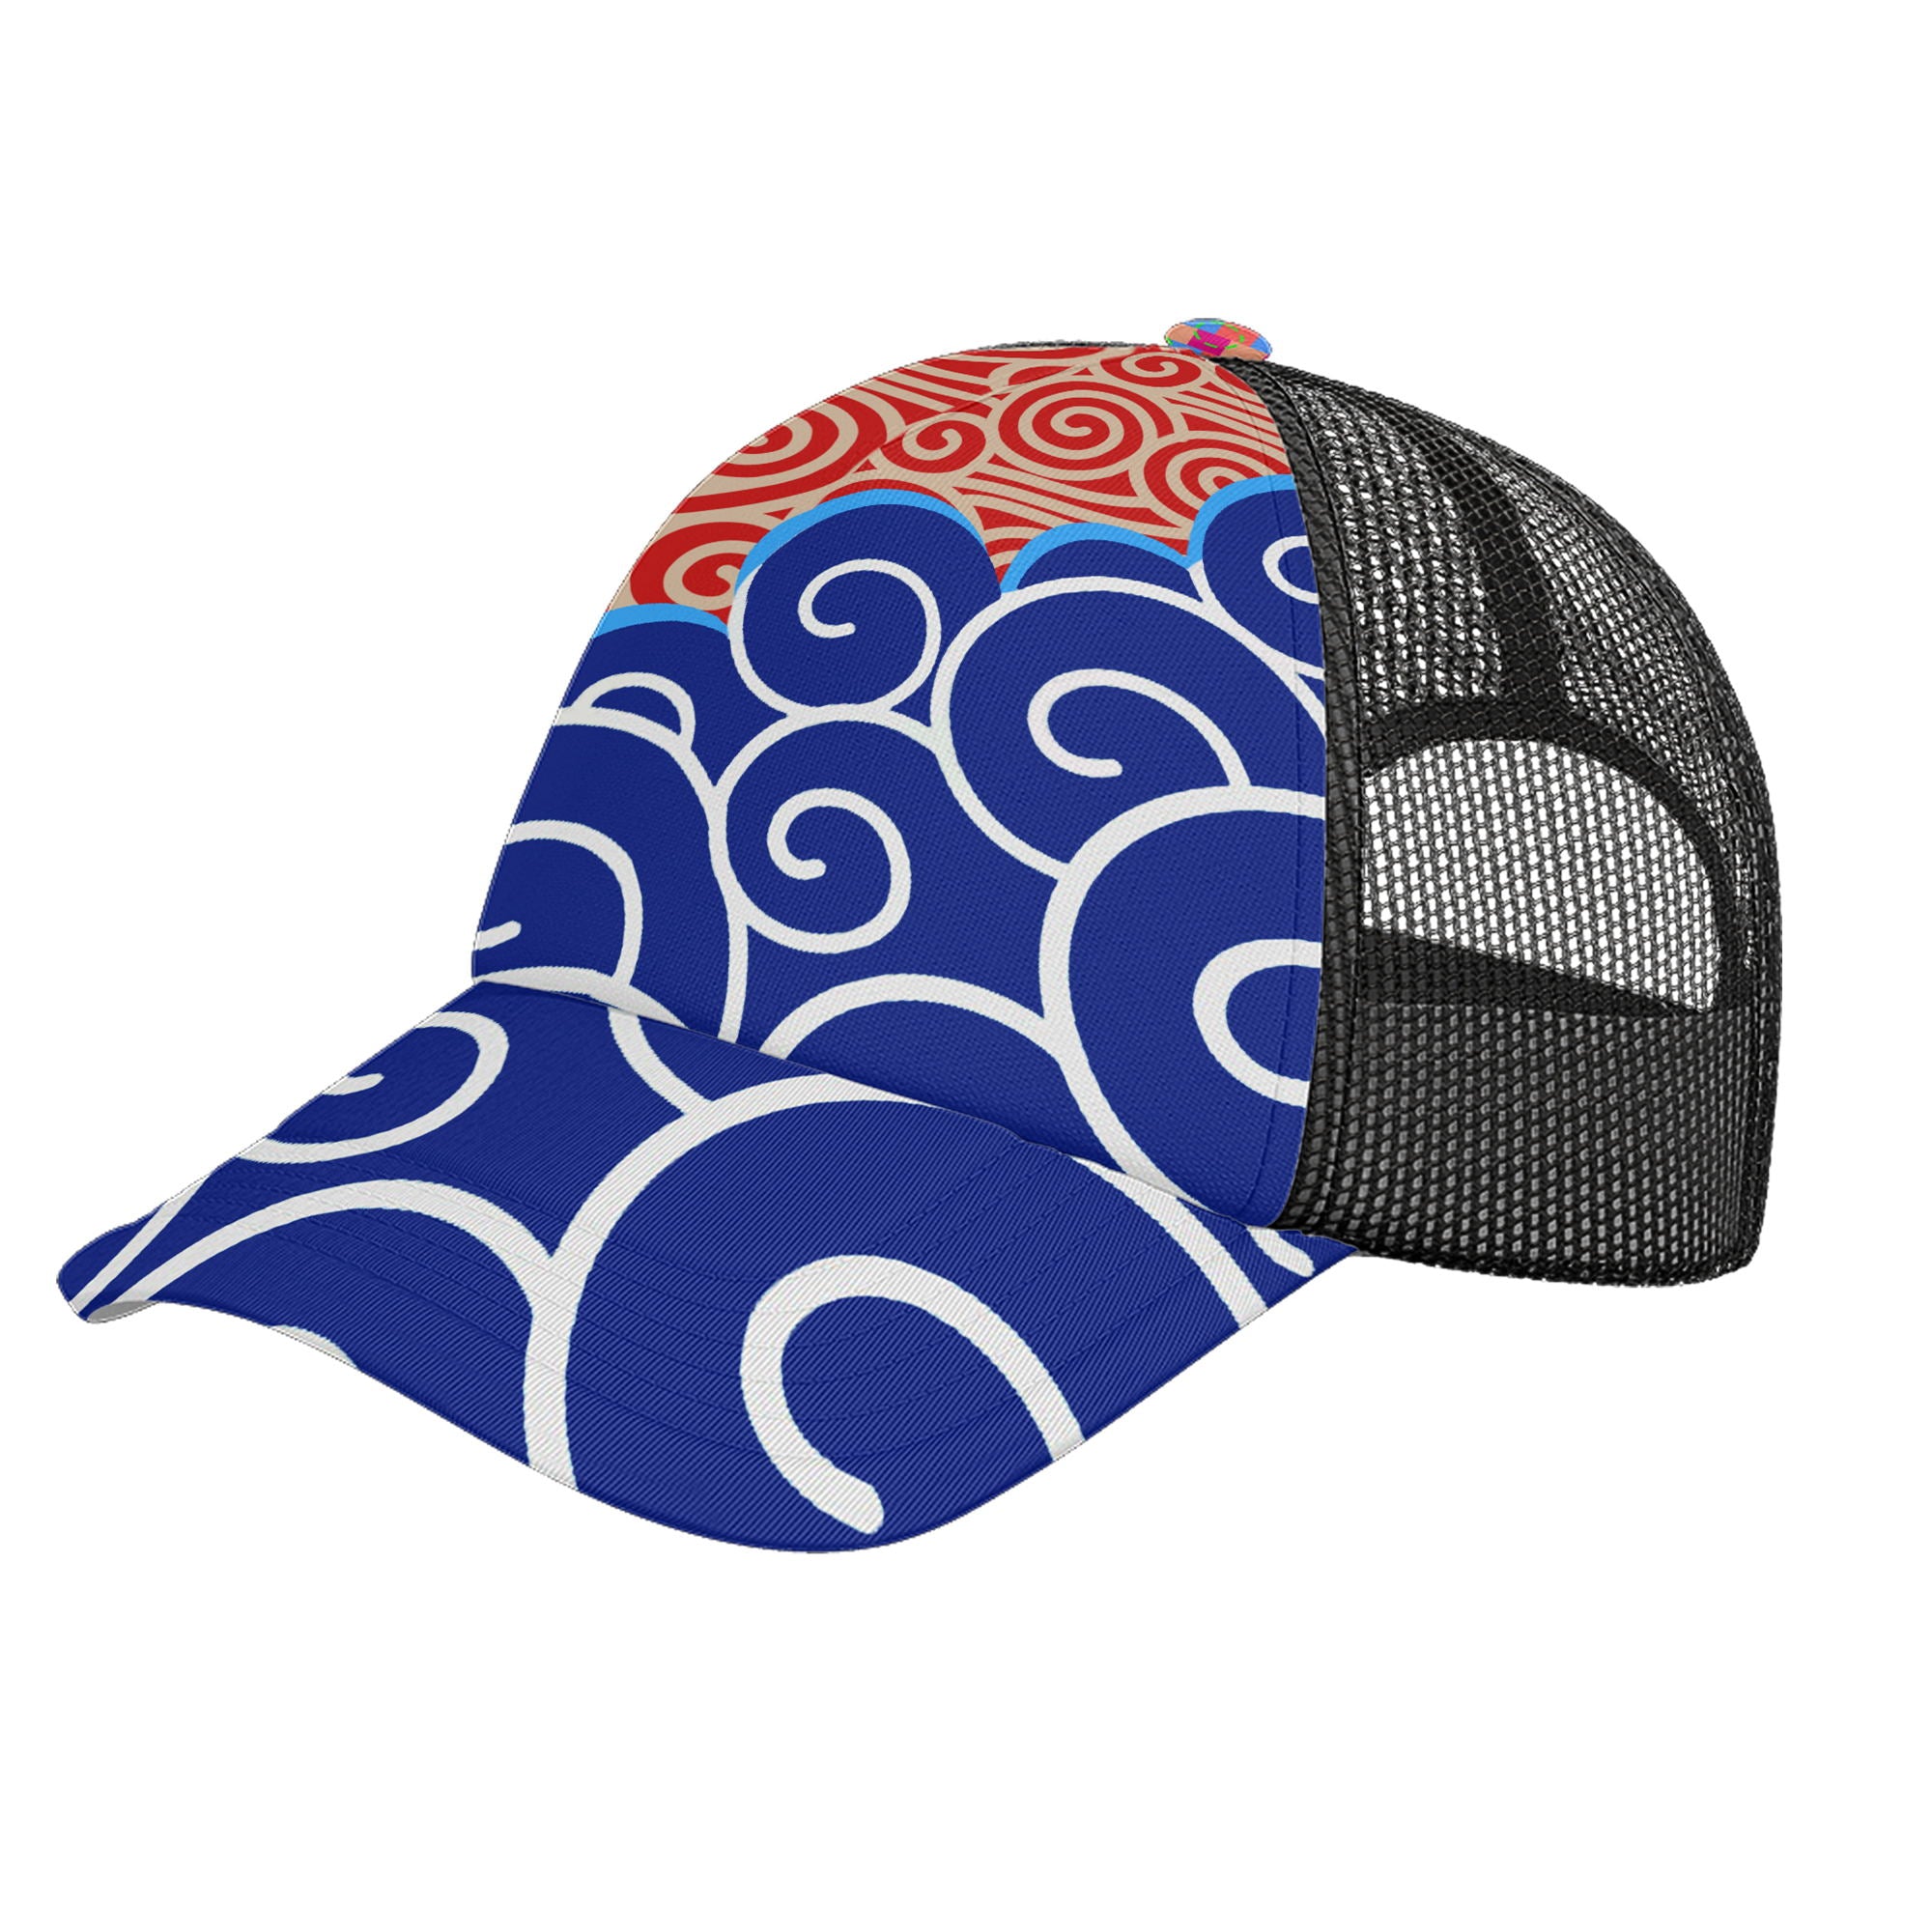 定制打印Logo个性设计中国莆田特色妈祖文化主题户外鸭舌帽红蓝色PR111-23025001-1